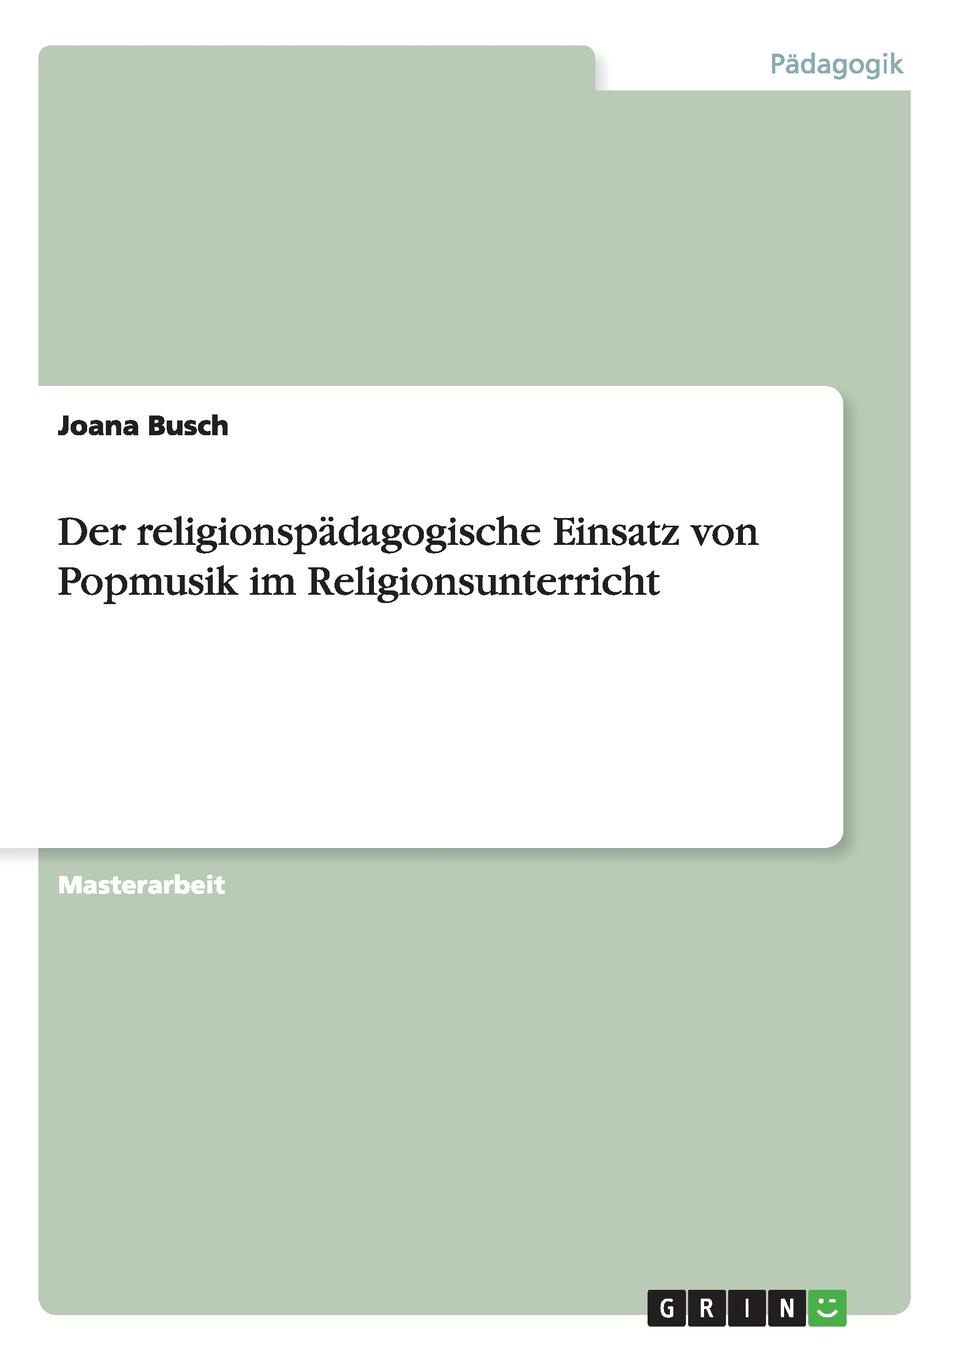 Joana Busch Der religionspadagogische Einsatz von Popmusik im Religionsunterricht